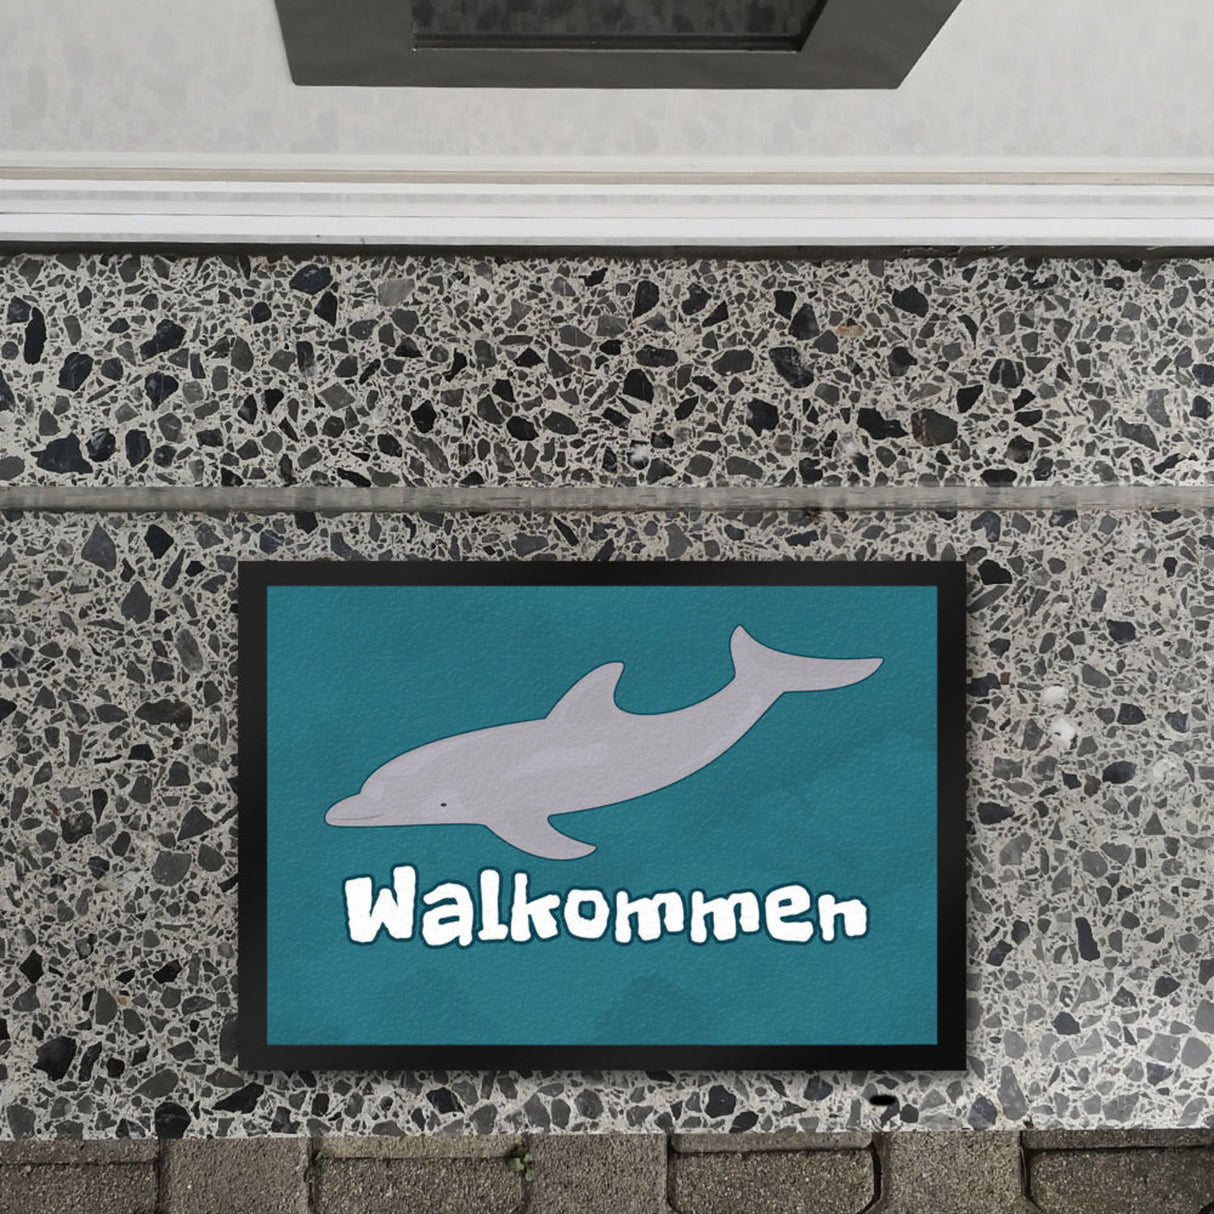 Blauwal Fußmatte in 35x50 cm mit Ozeanmotiv und Spruch Walkommen